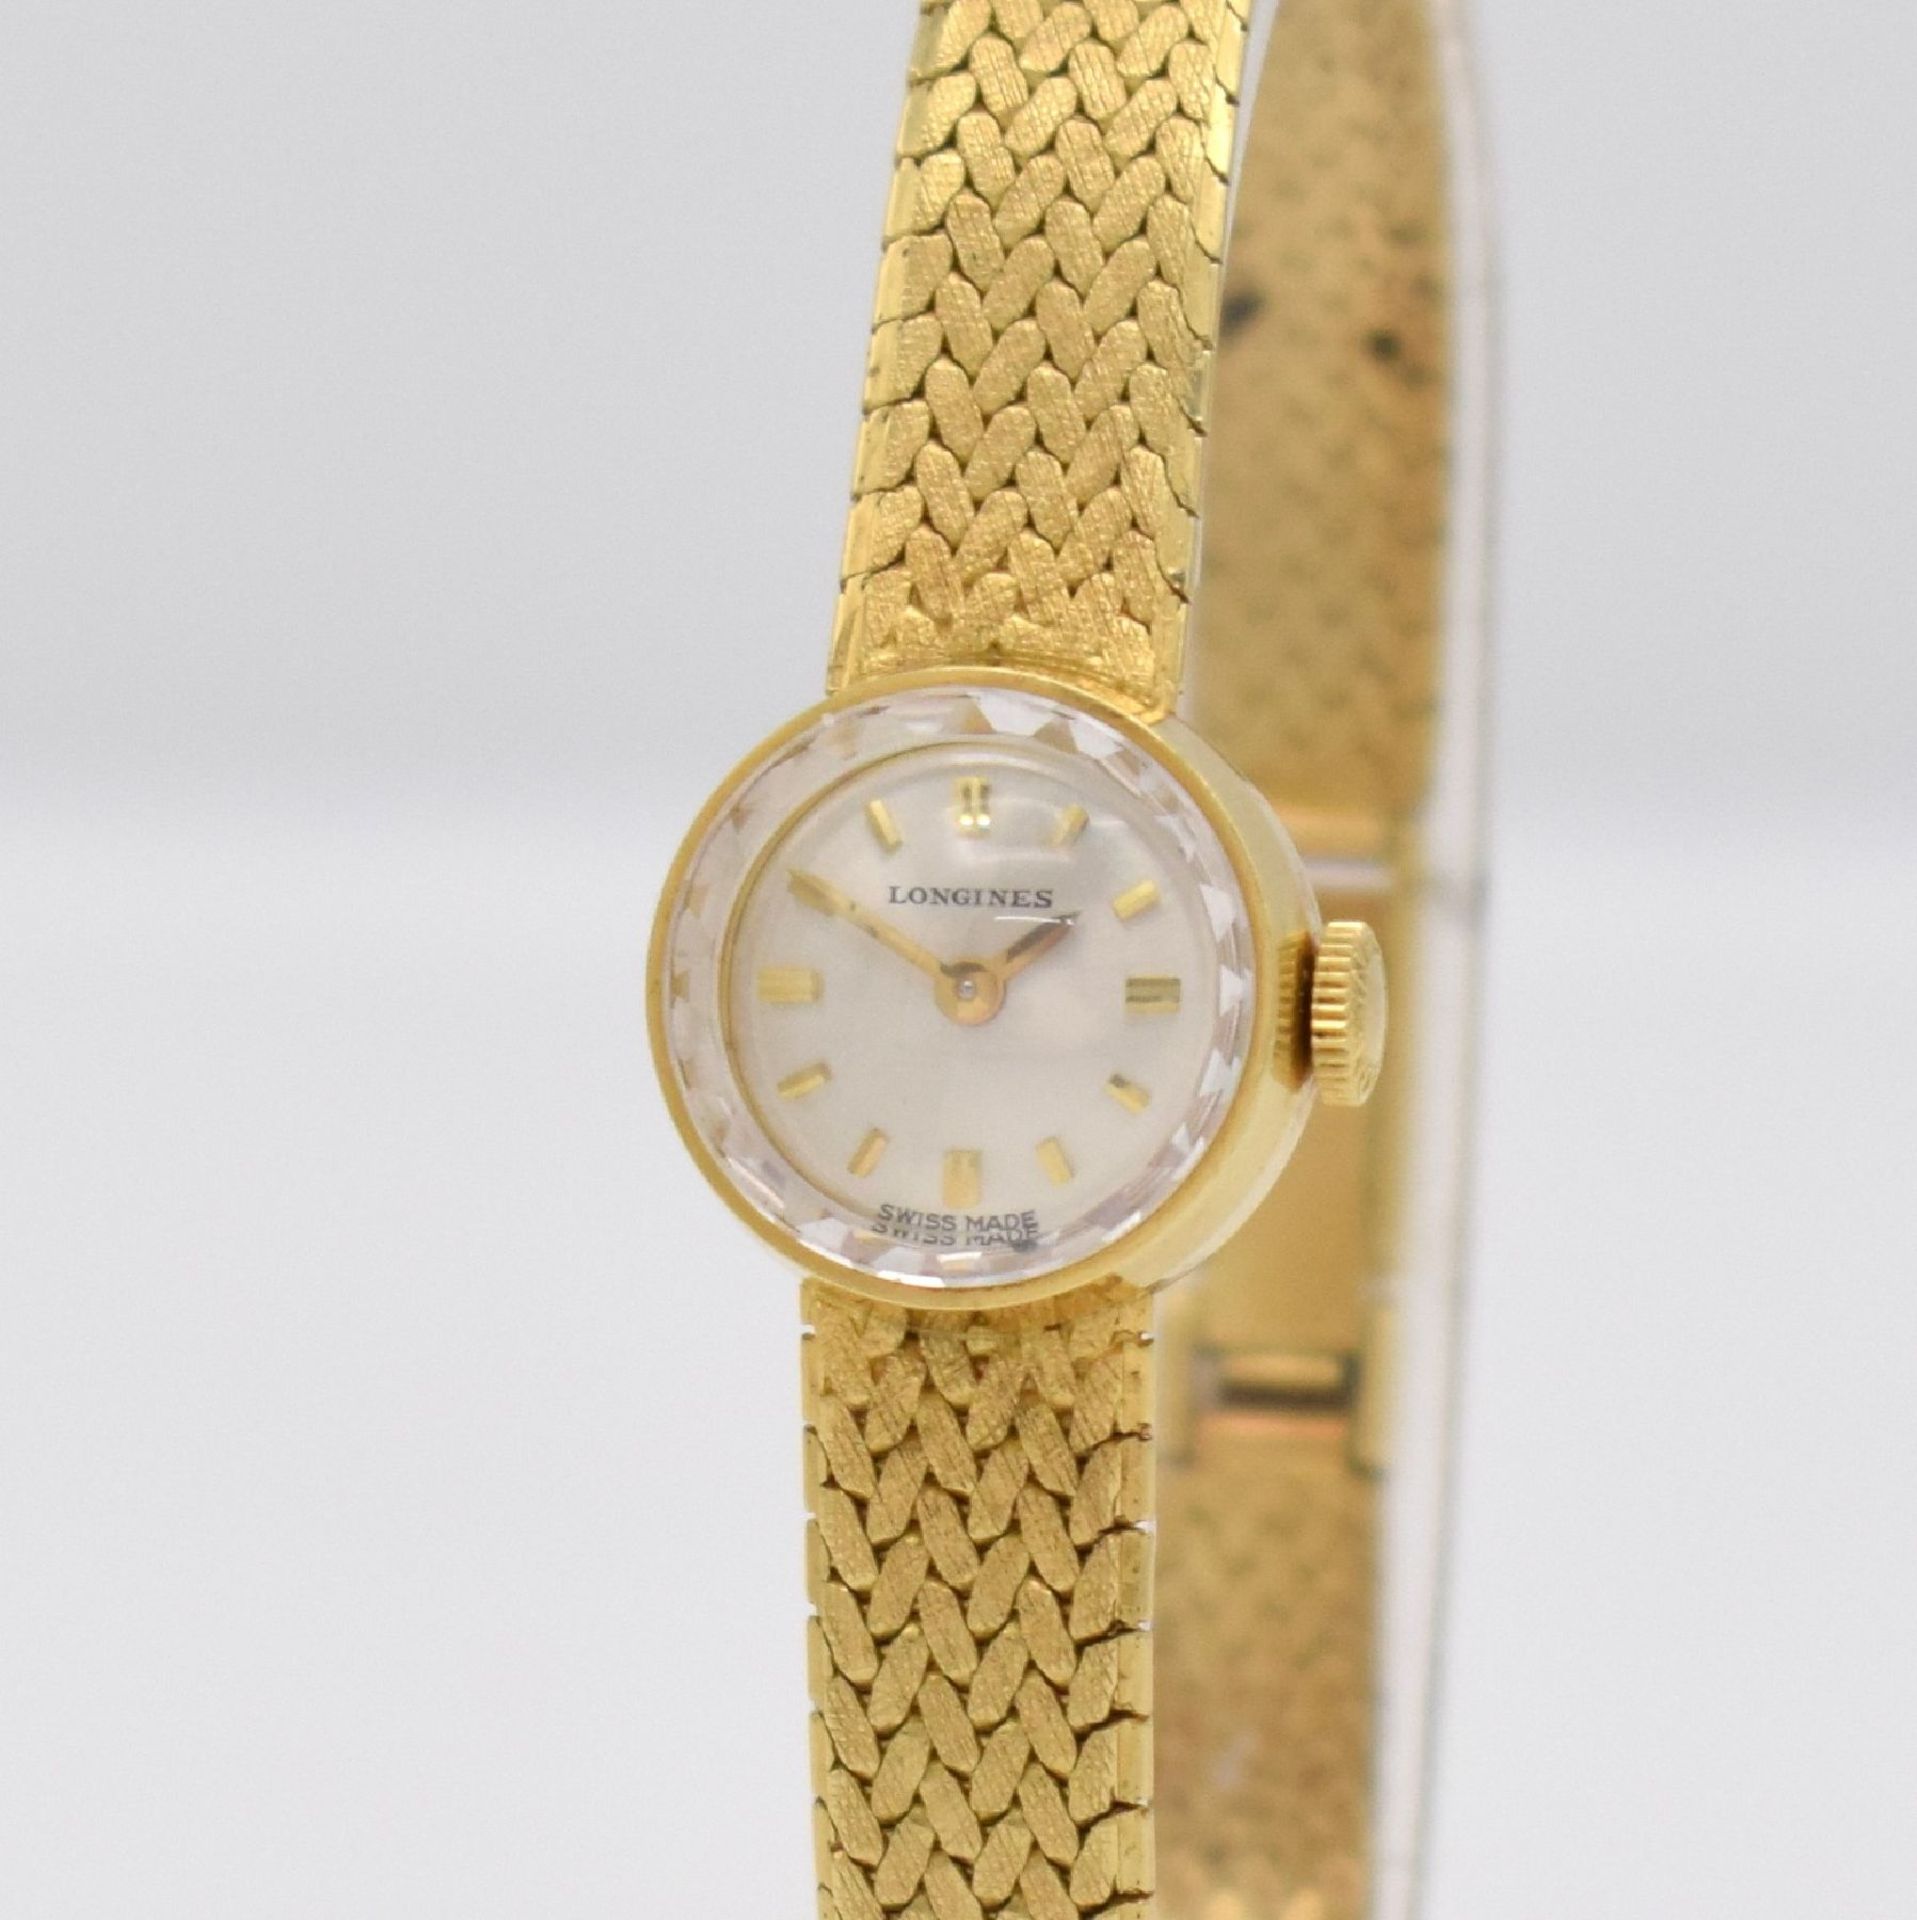 LONGINES Damenarmbanduhr in GG 750/000, Schweiz um 1965, Handaufzug, gedr. Geh., angesetztes unsign. - Bild 4 aus 9